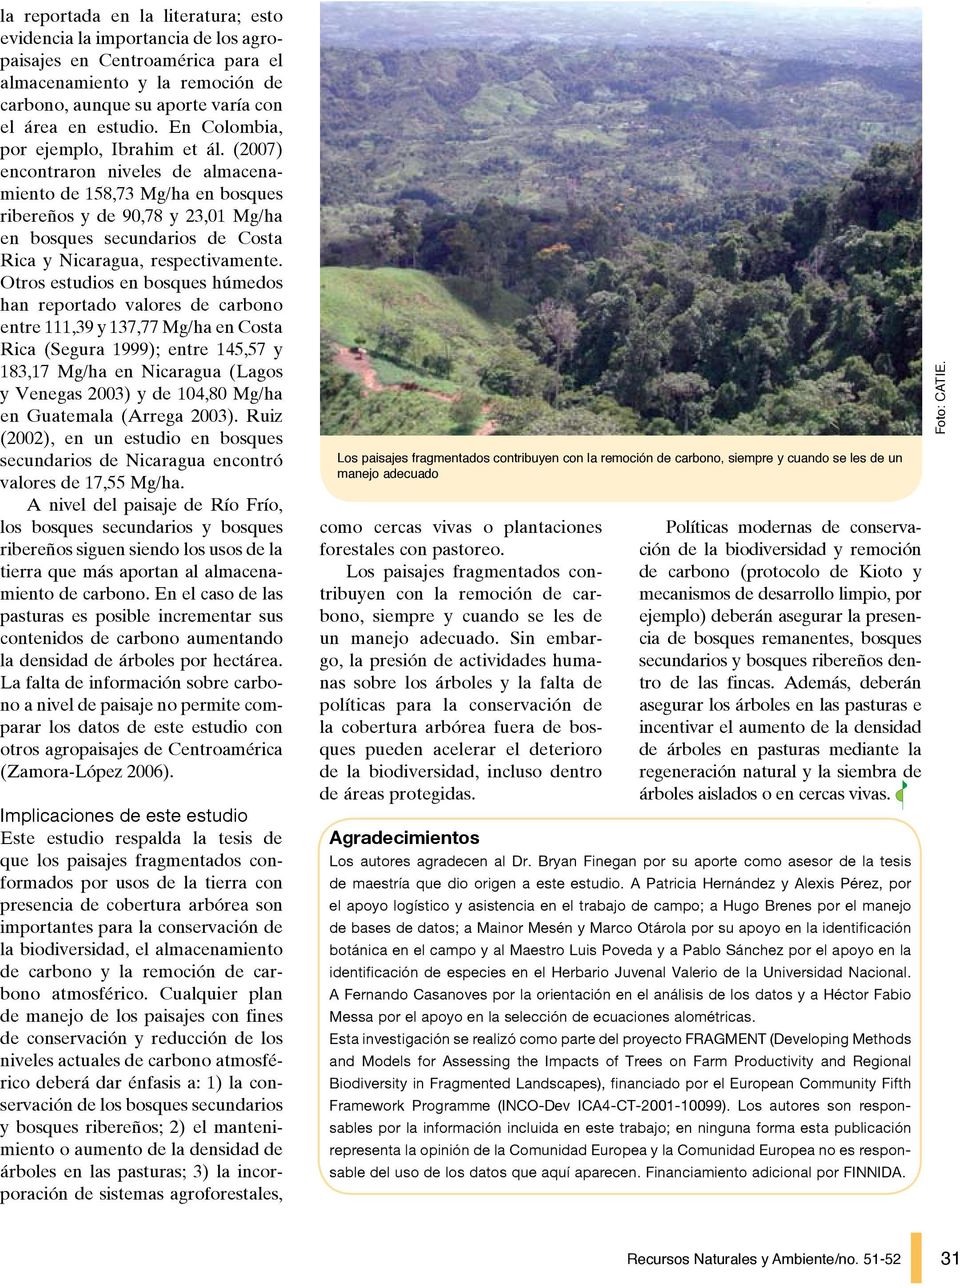 (2007) encontraron niveles de almacenamiento de 158,73 Mg/ha en bosques ribereños y de 90,78 y 23,01 Mg/ha en bosques secundarios de Costa Rica y Nicaragua, respectivamente.